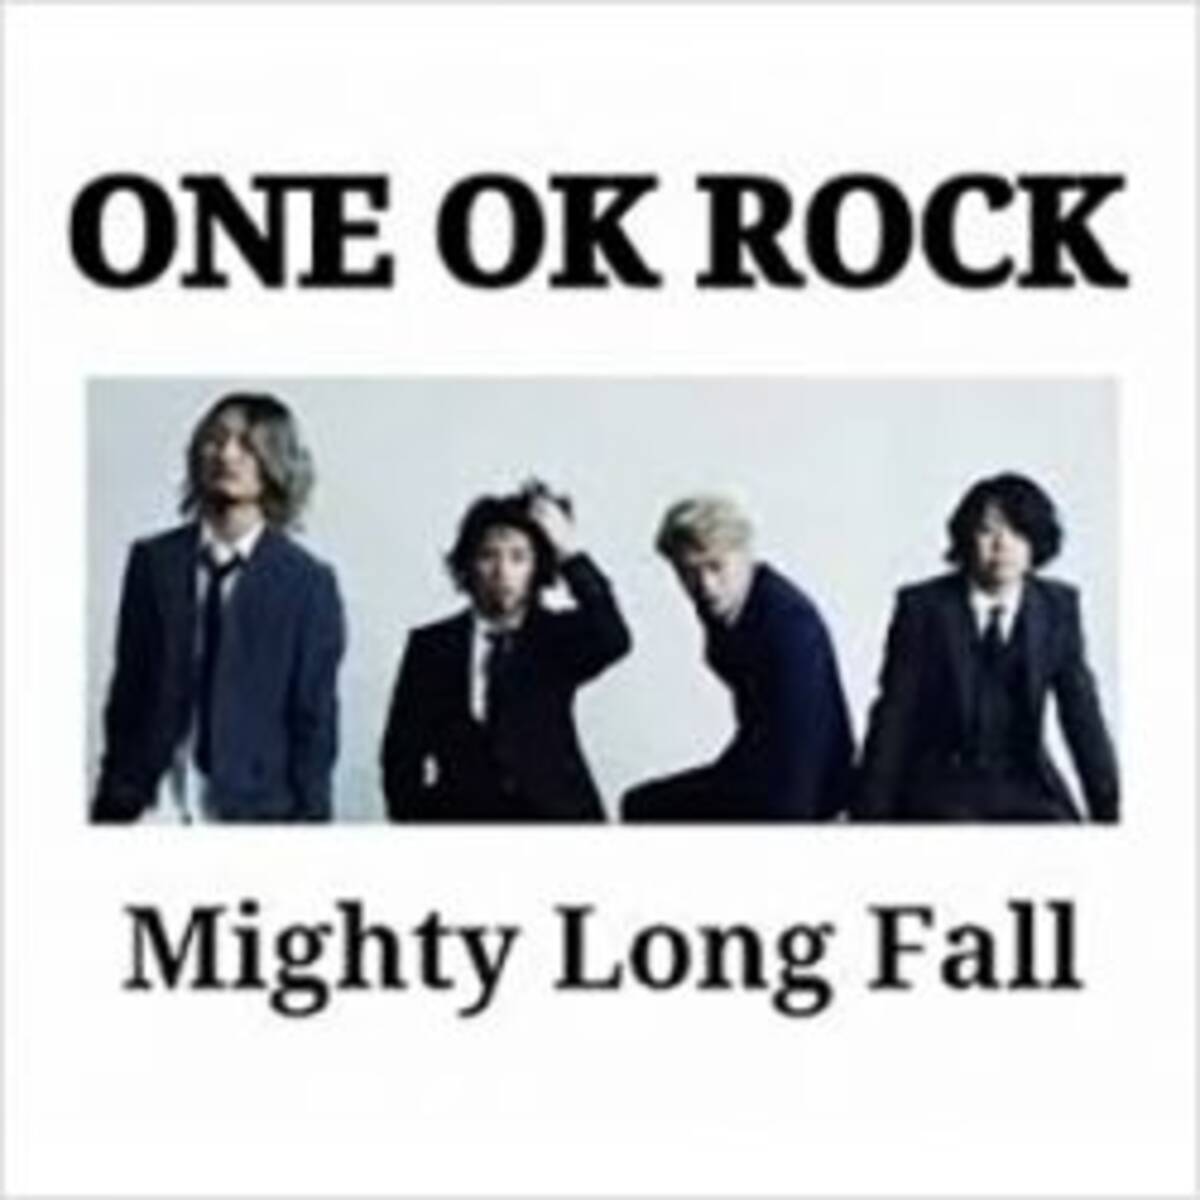 One Ok Rock ボーカルtakaの日本人ファンへの激怒ツイートはお門違い